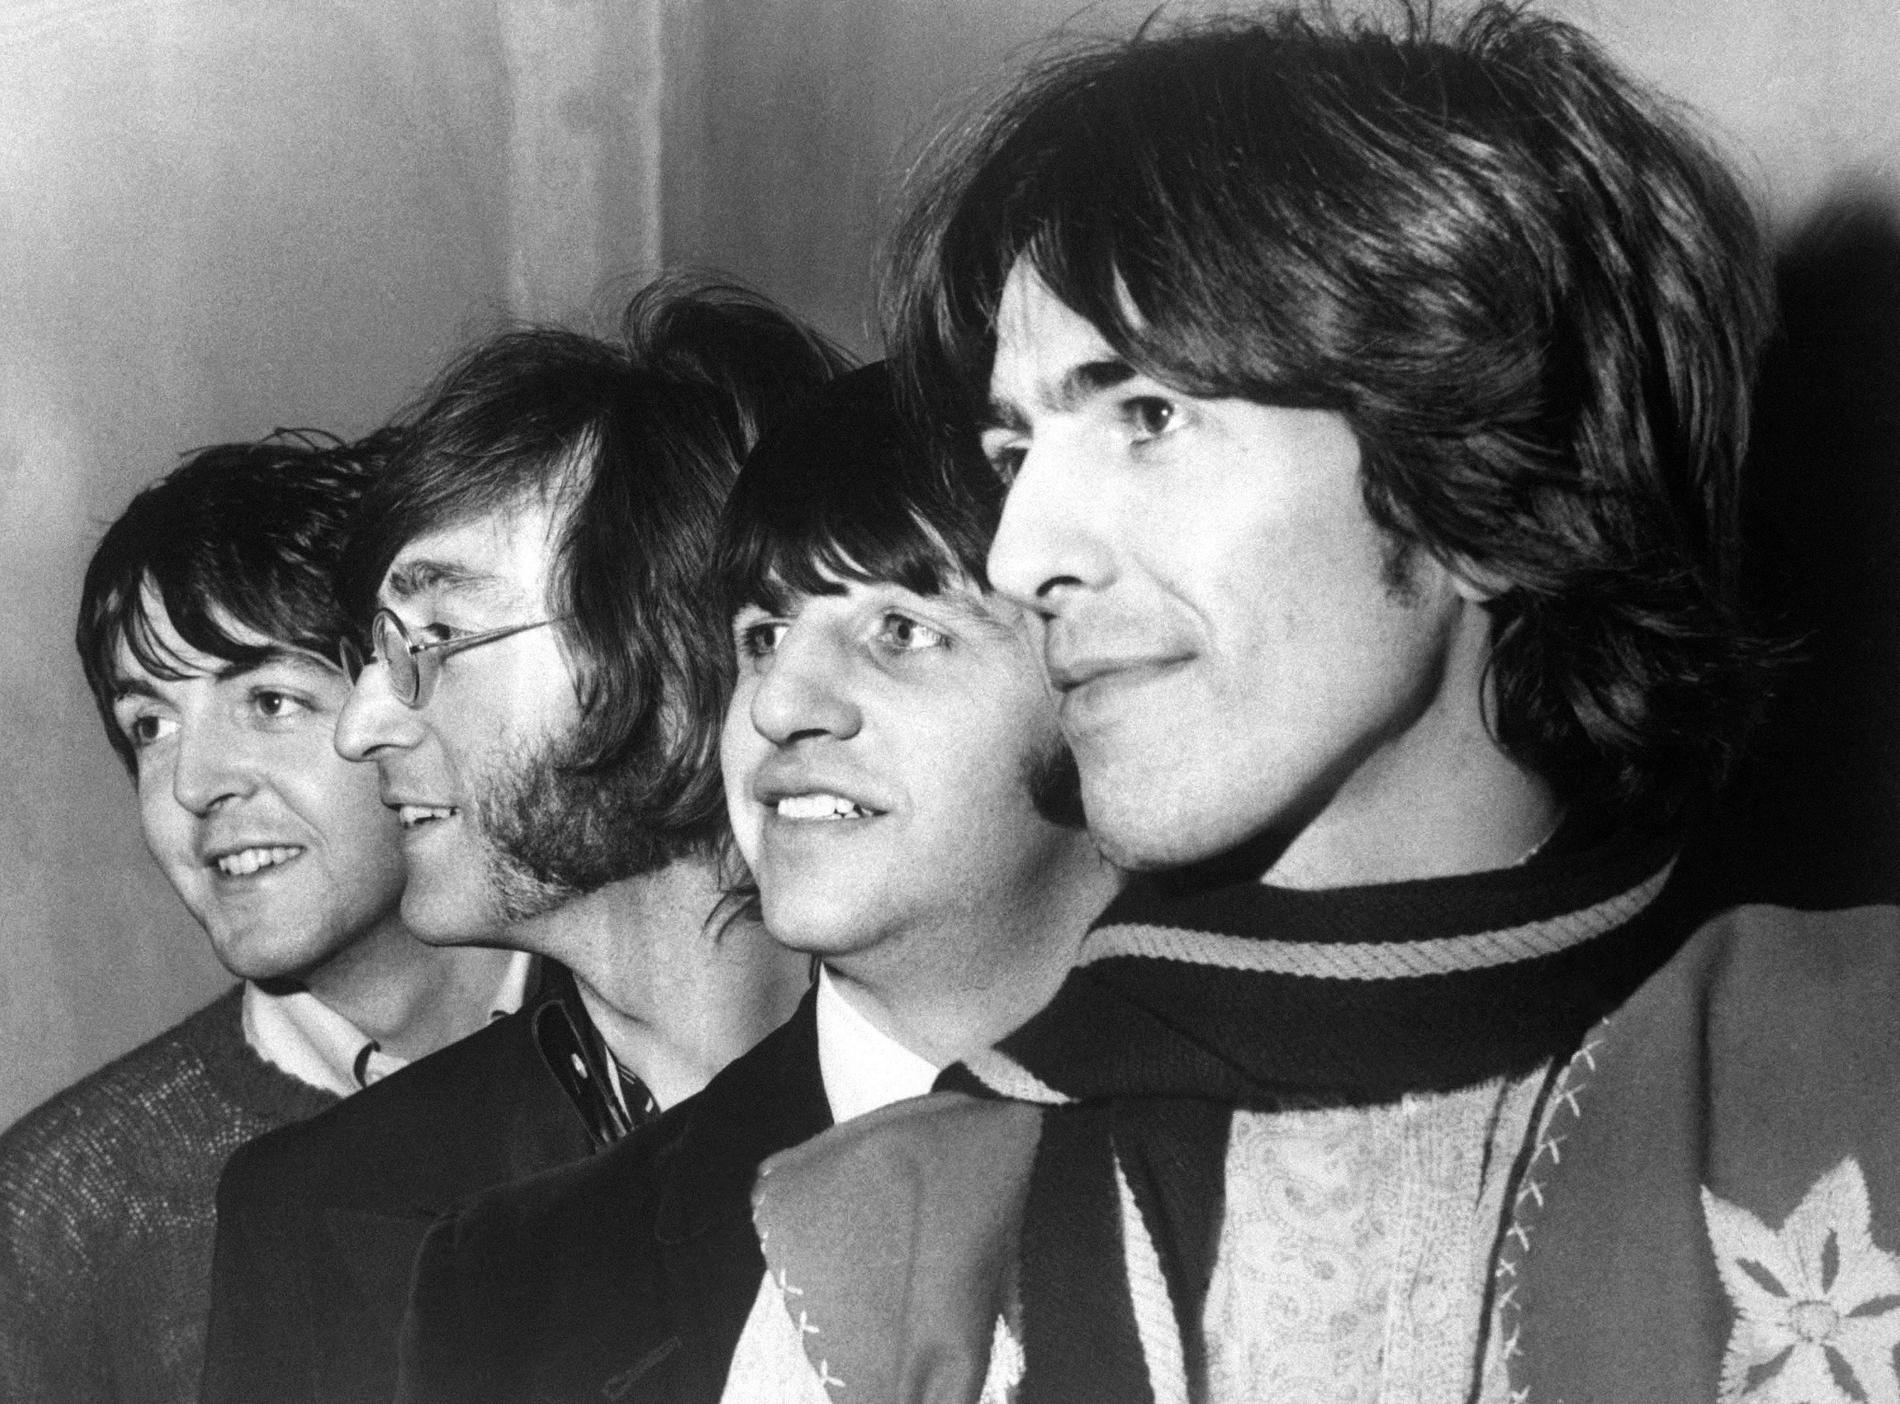 Paul McCartney, John Lennon, Ringo Starr och George Harrison utgjorde The Beatles. Arkivbild.